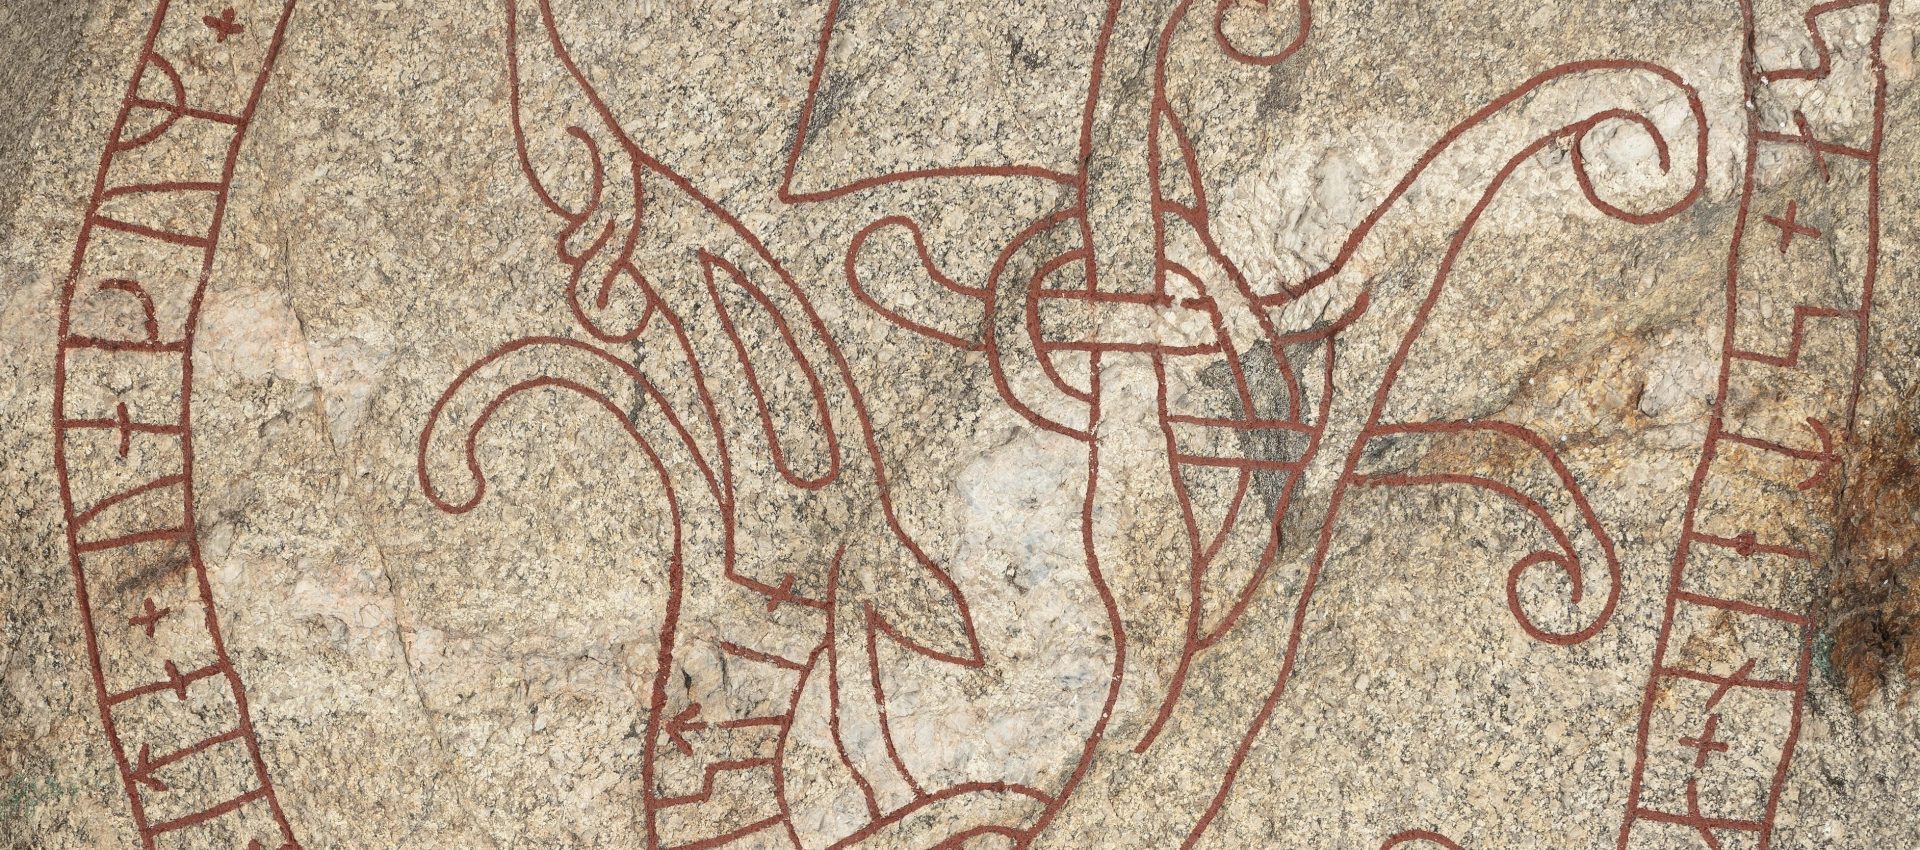 Detaljbild av en runsten av granit mer rödfärgade runslingor.